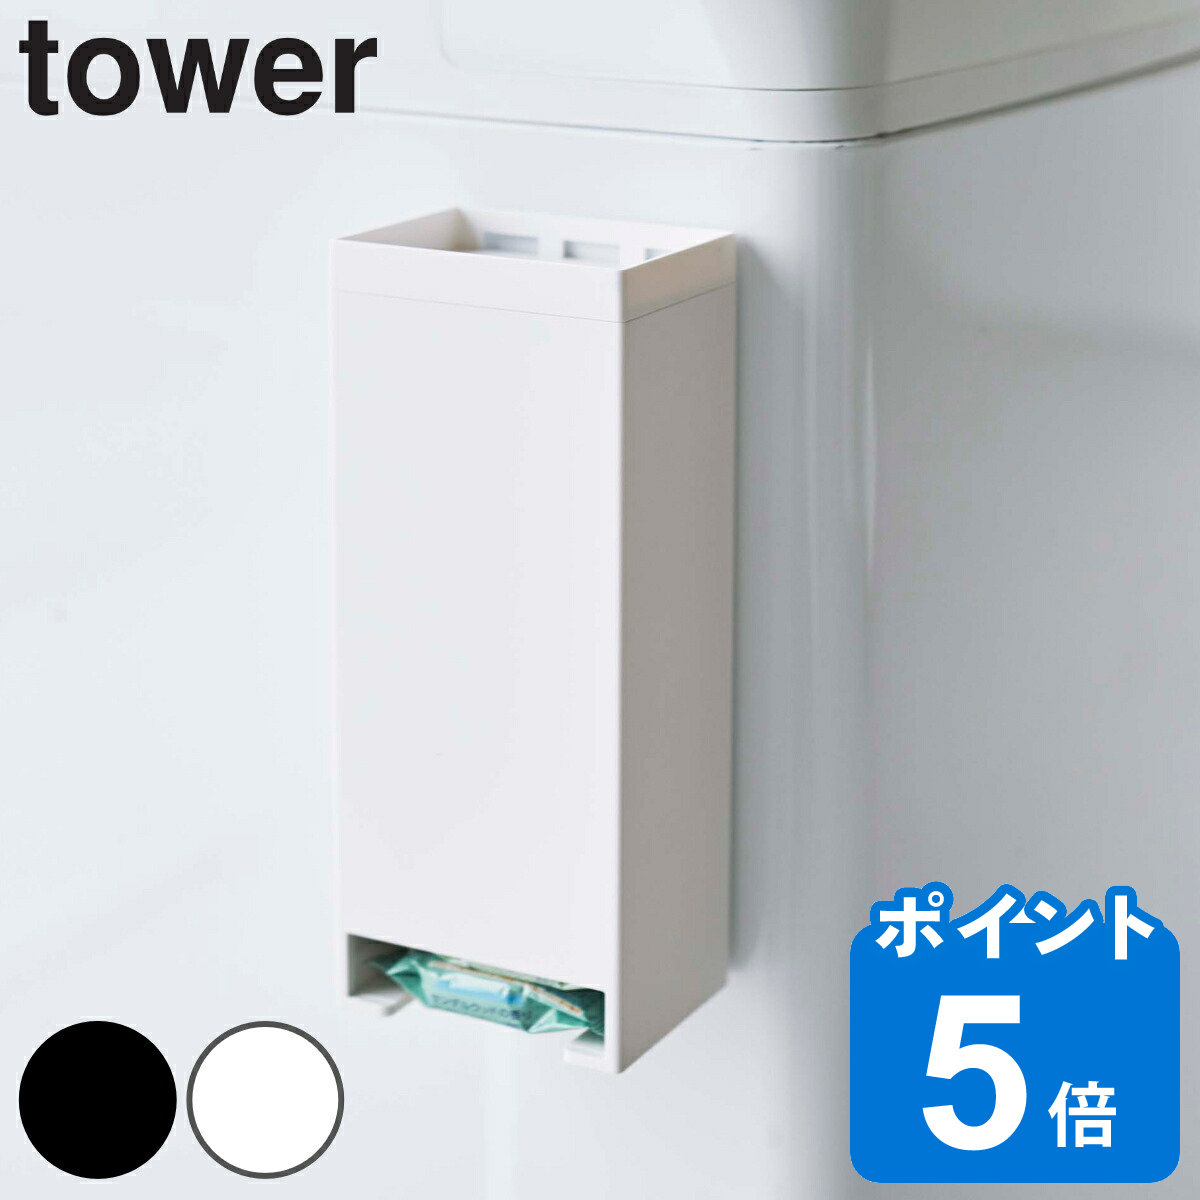 tower お風呂収納 マグネットお風呂入浴剤ストッカー